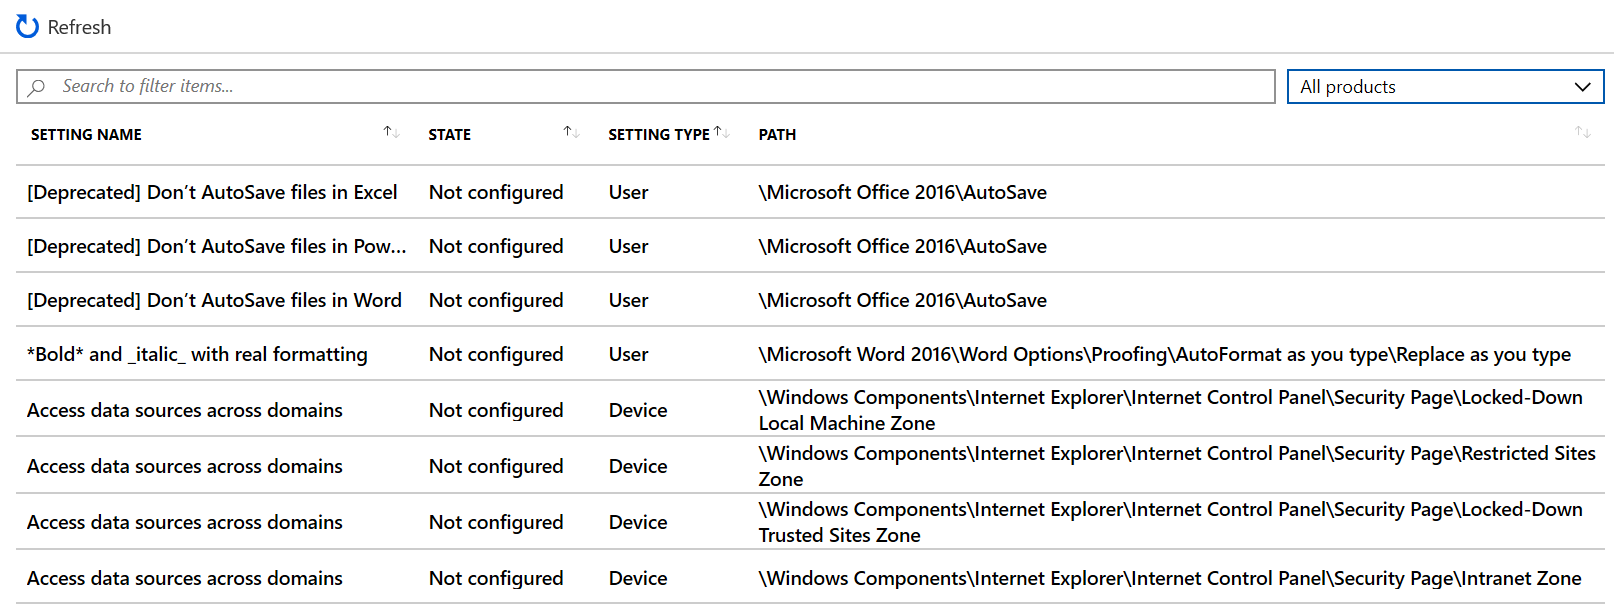 Vedere un elenco di esempio di impostazioni e usare i pulsanti precedente e successivo nell Intune a interfaccia di amministrazione e Microsoft Intune.